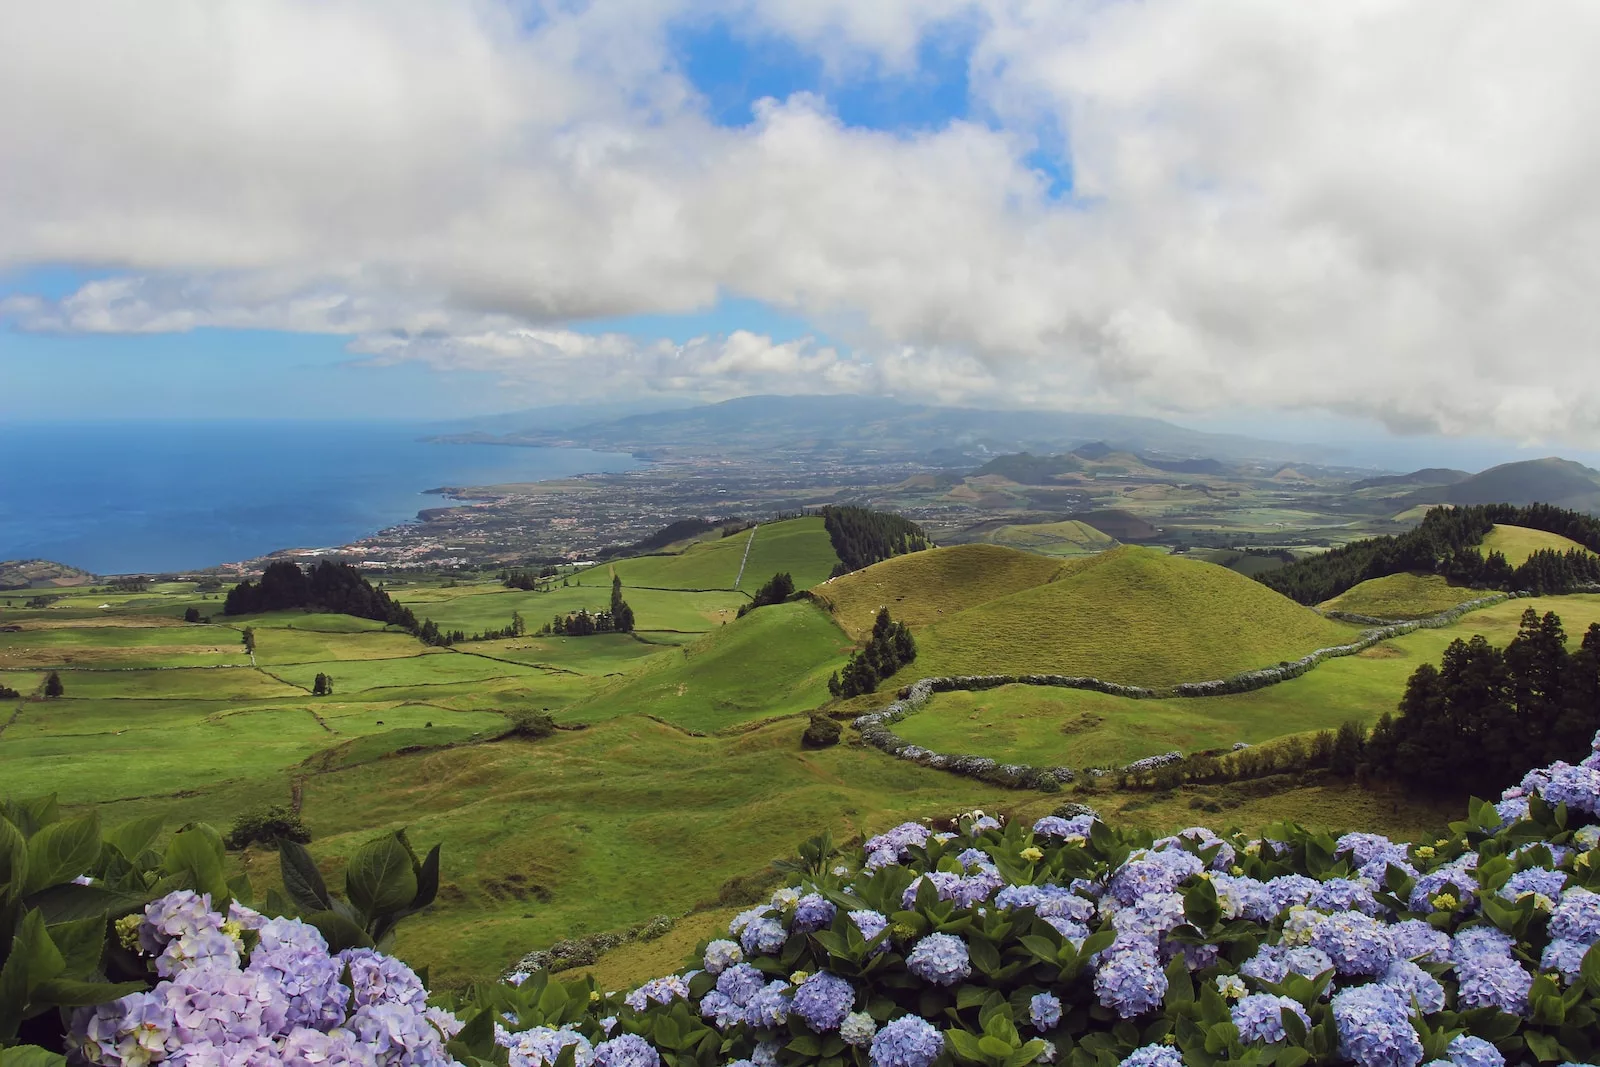 A la découverte de Santa Maria aux Açores